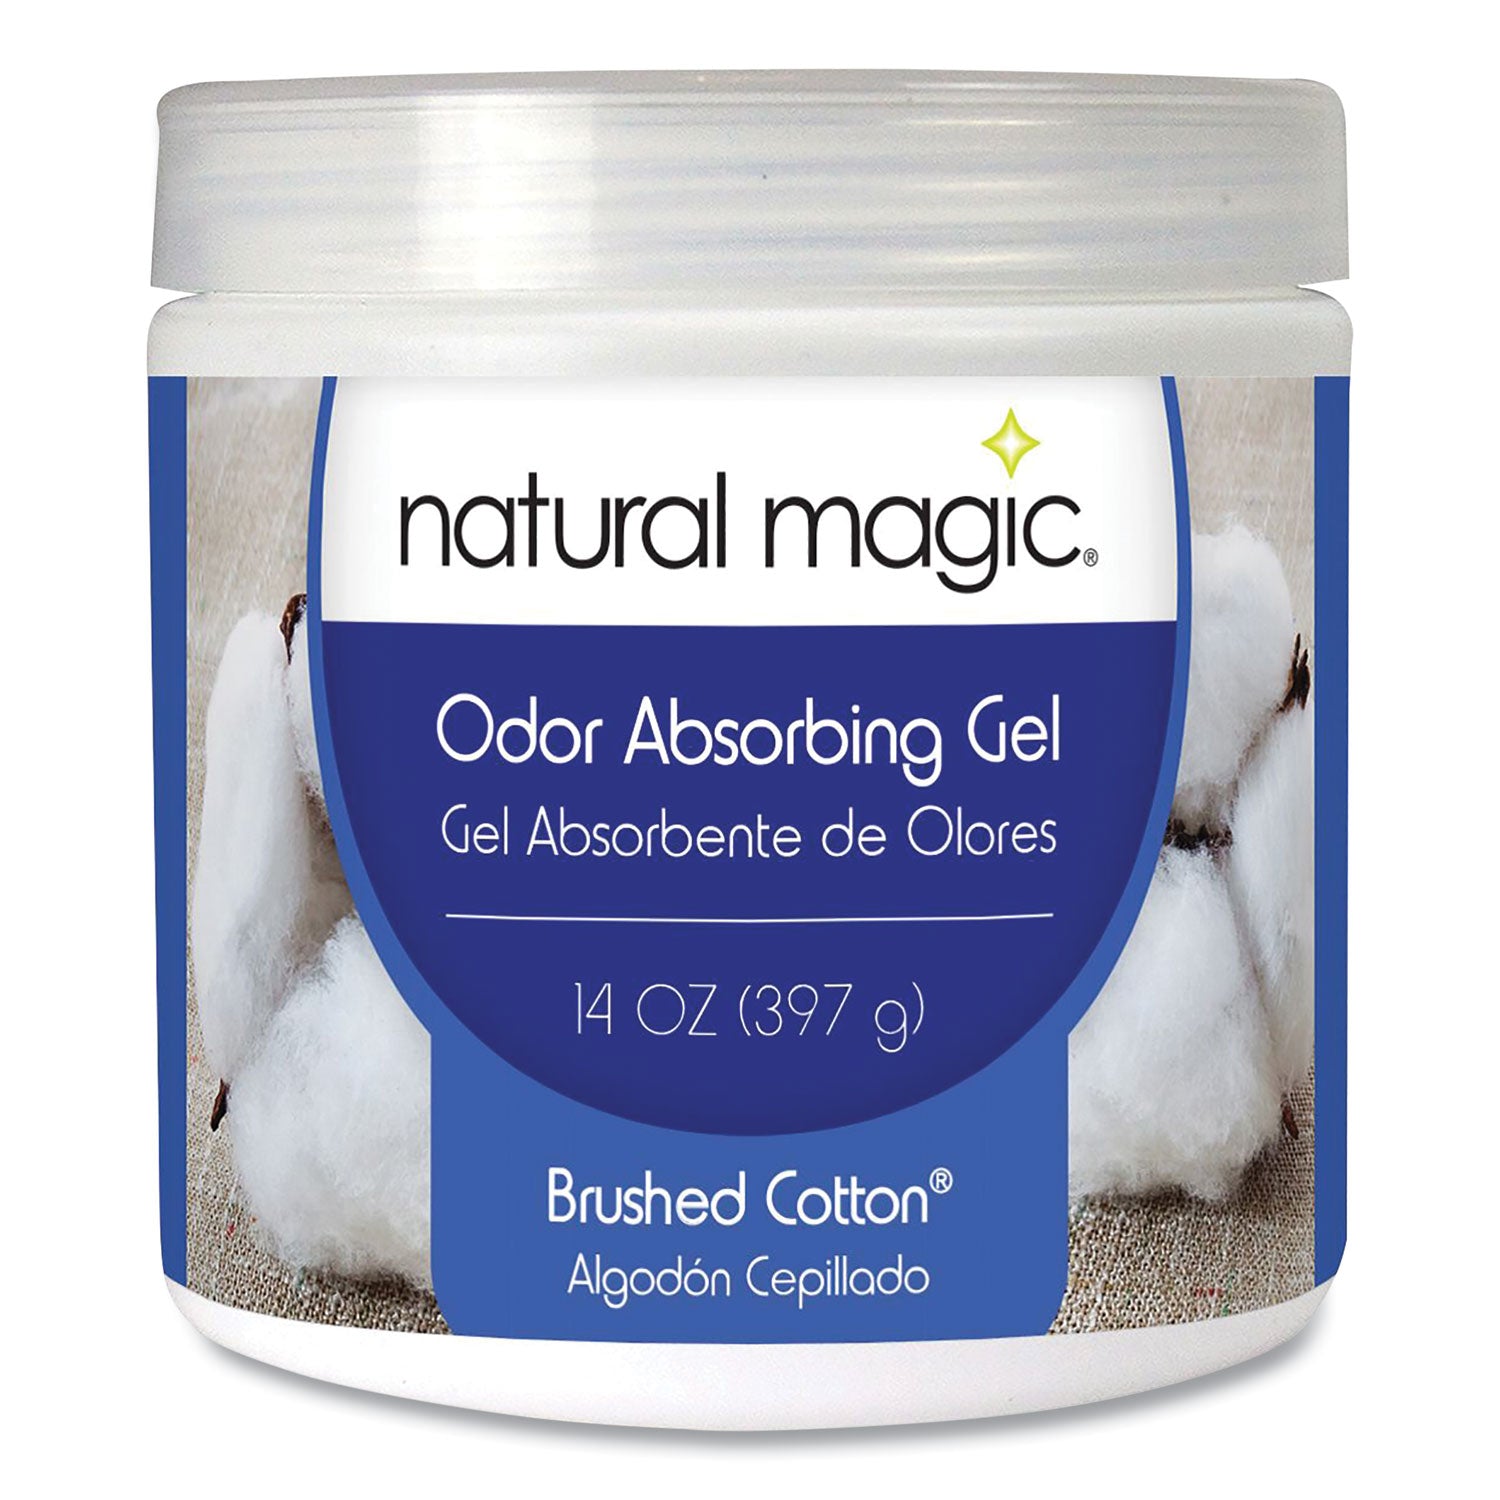 odor-absorbing-gel-brushed-cotton-14-oz-jar_wmn4120d4040 - 1